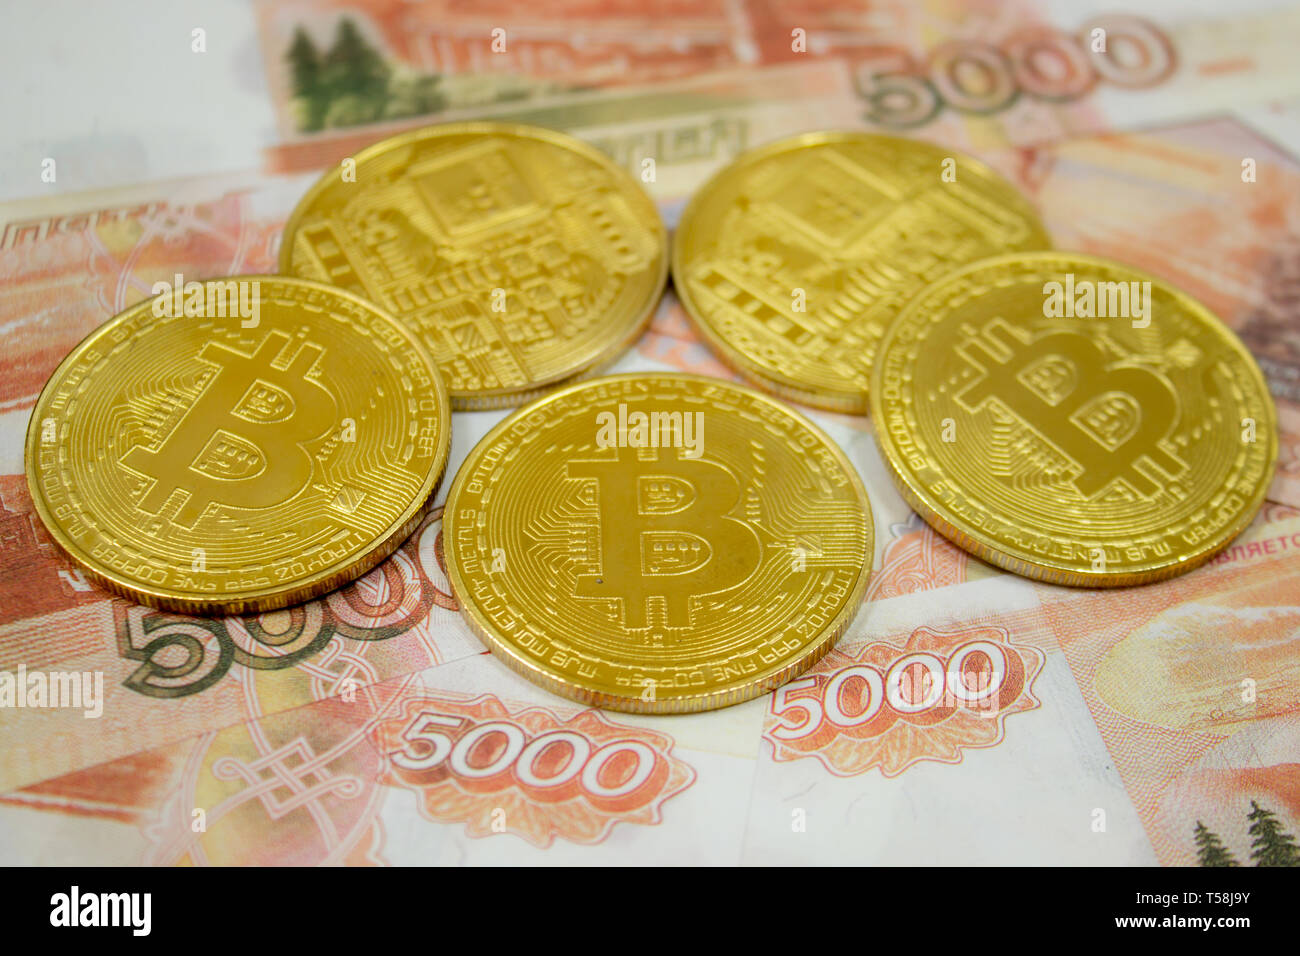 20 биткоинов в рубли выгодной обмен валюты в воронеже